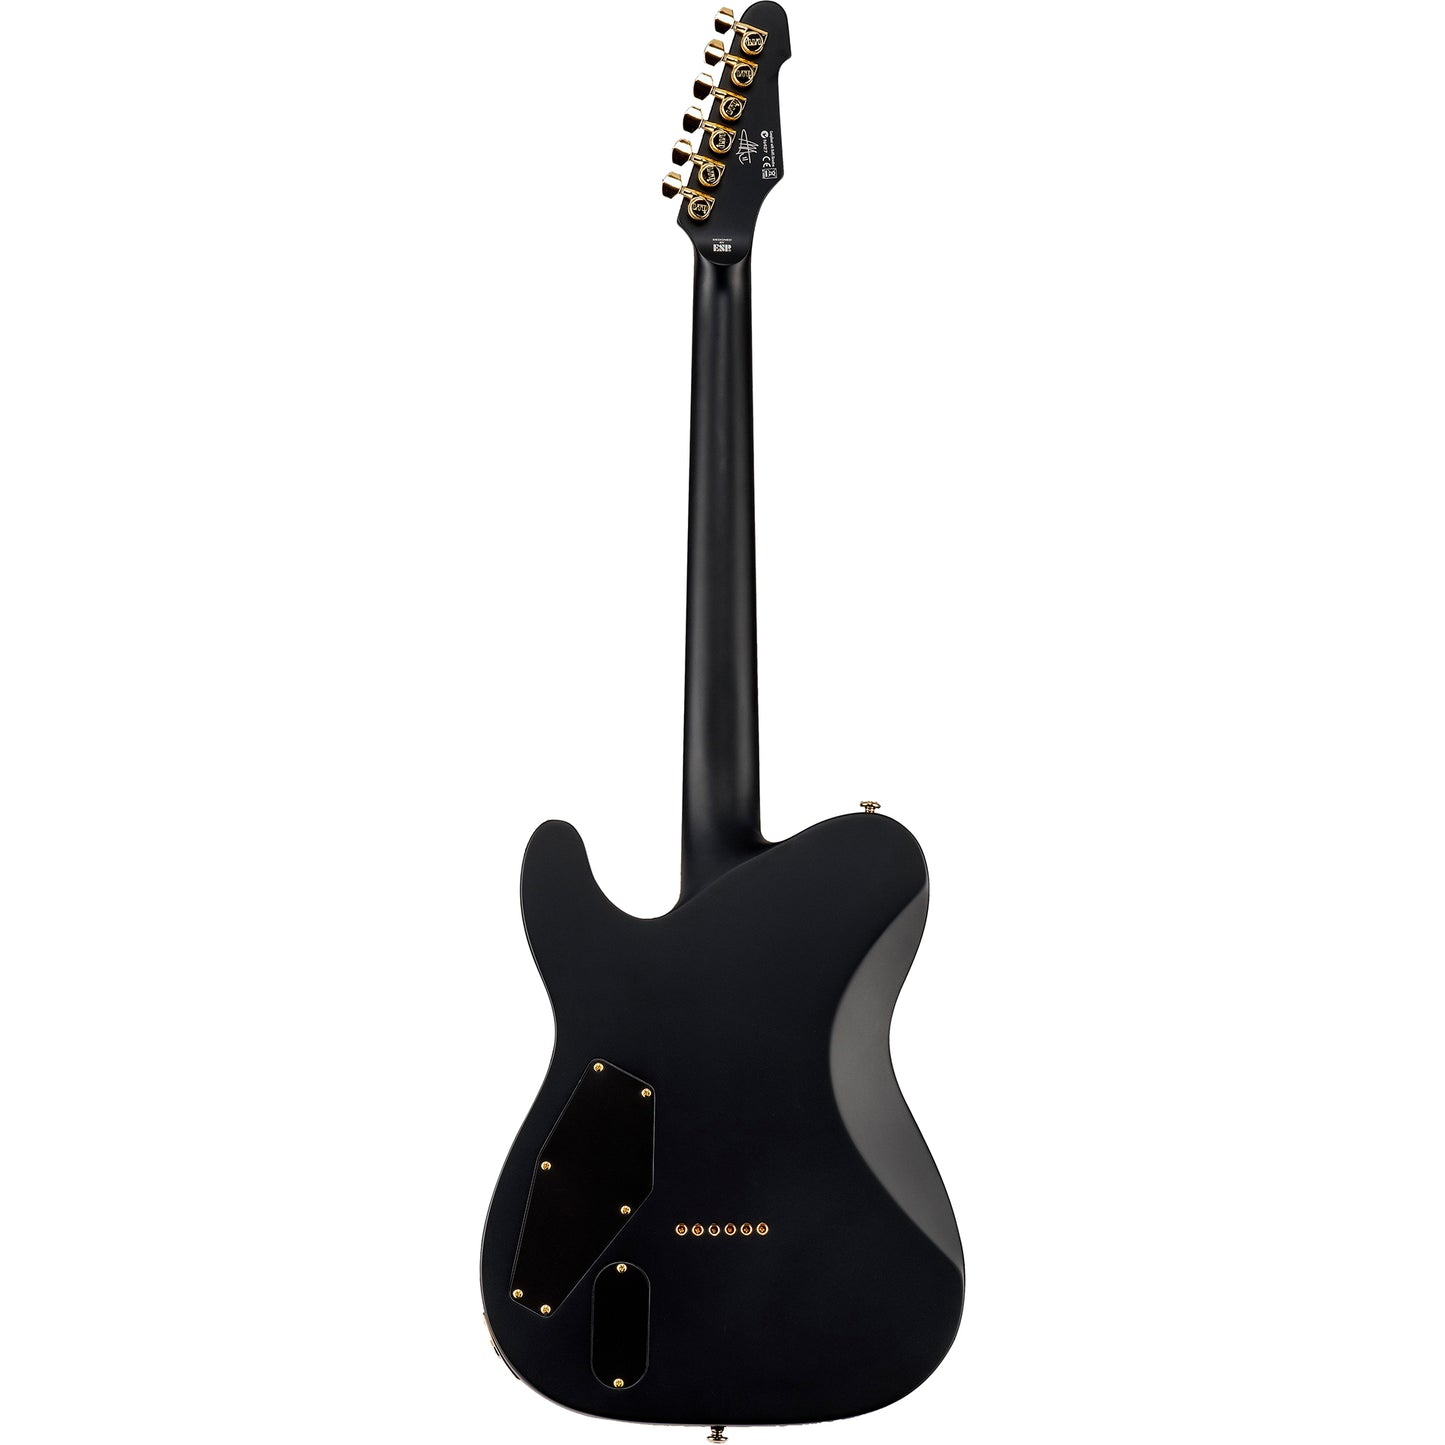 ESP LTD AA-1 Alan Ashby Signature Electric Guitar, Black Satin